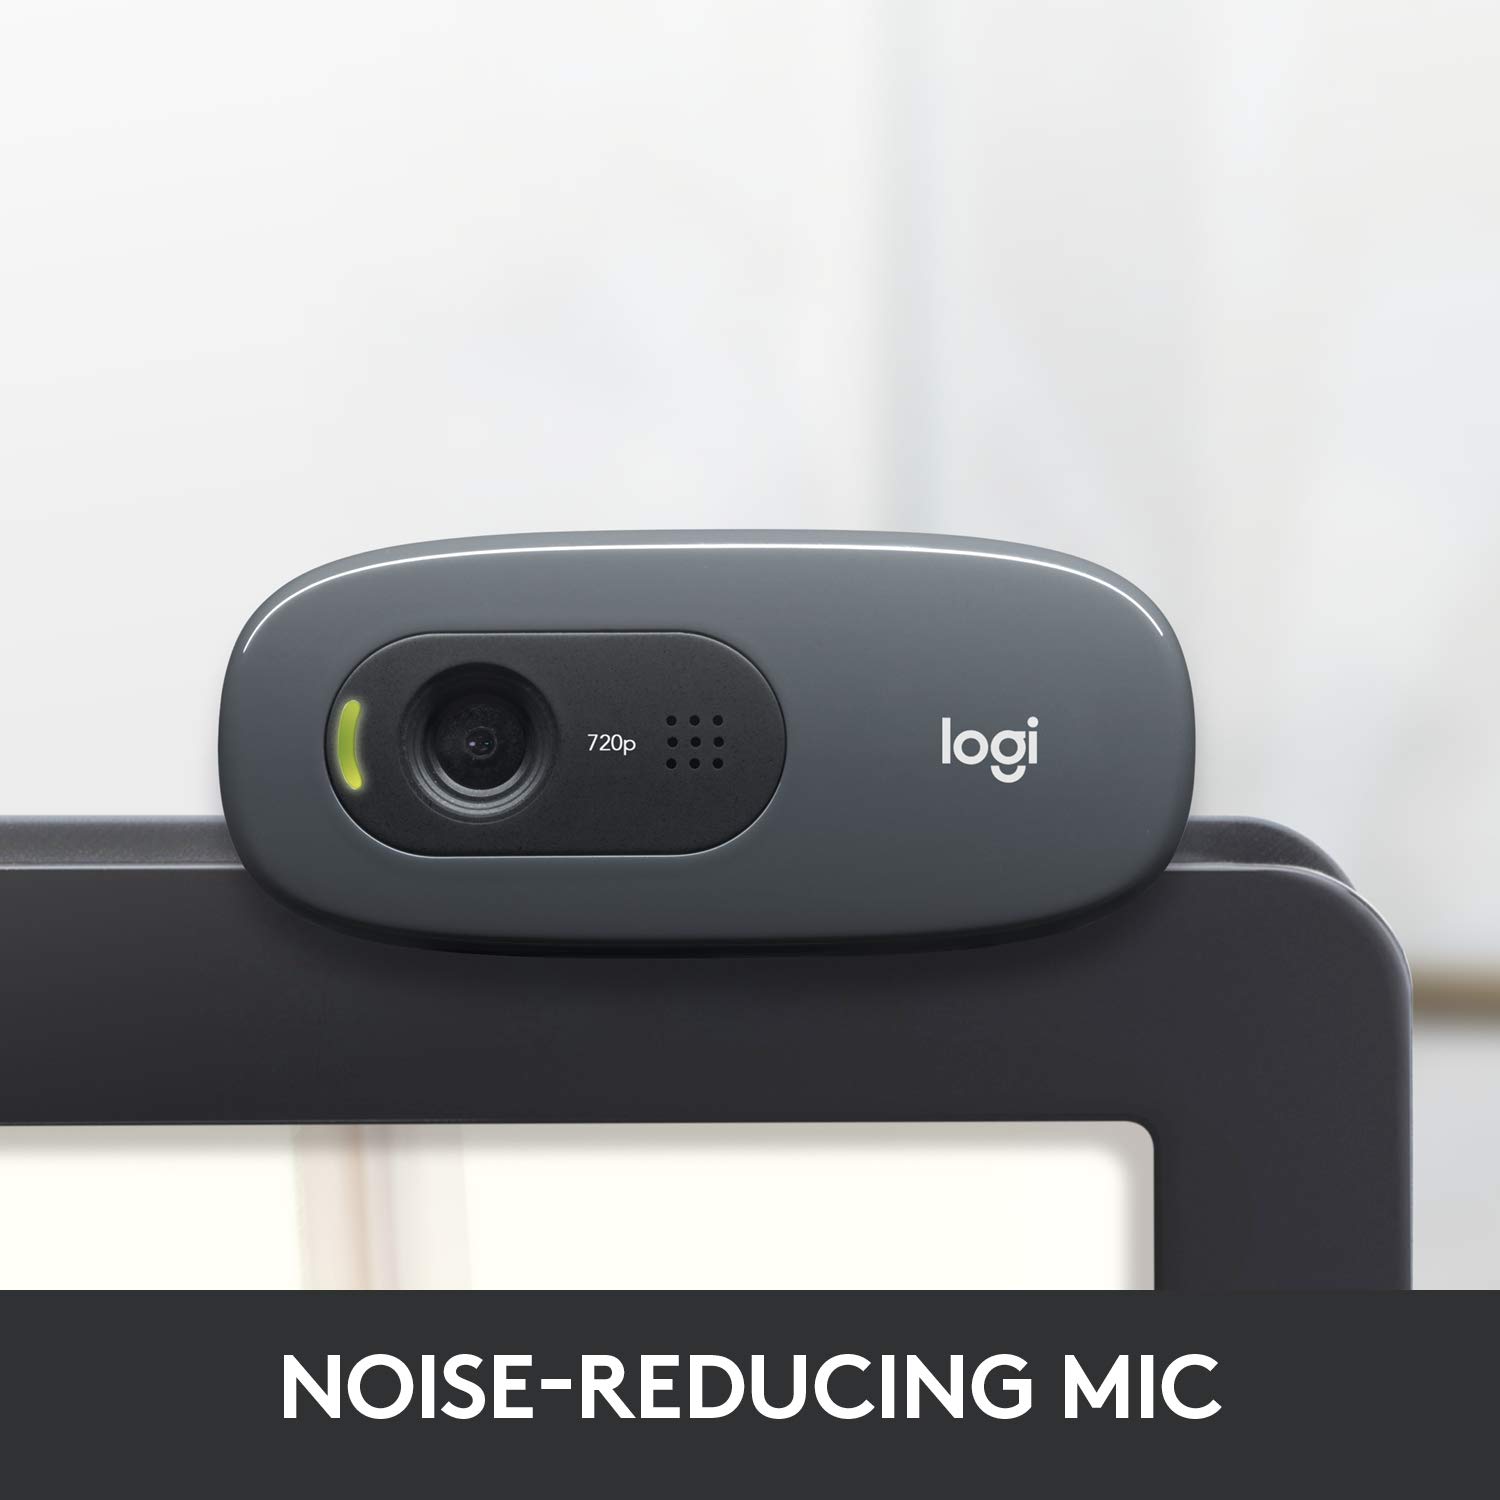 Webcam Logitech C270 720p HD - Góc cam 55 độ, micro giảm ồn, tự động chỉnh sáng cho Video Call, chụp ảnh 3MB, phù hợp PC/ Laptop - Hàng chính hãng